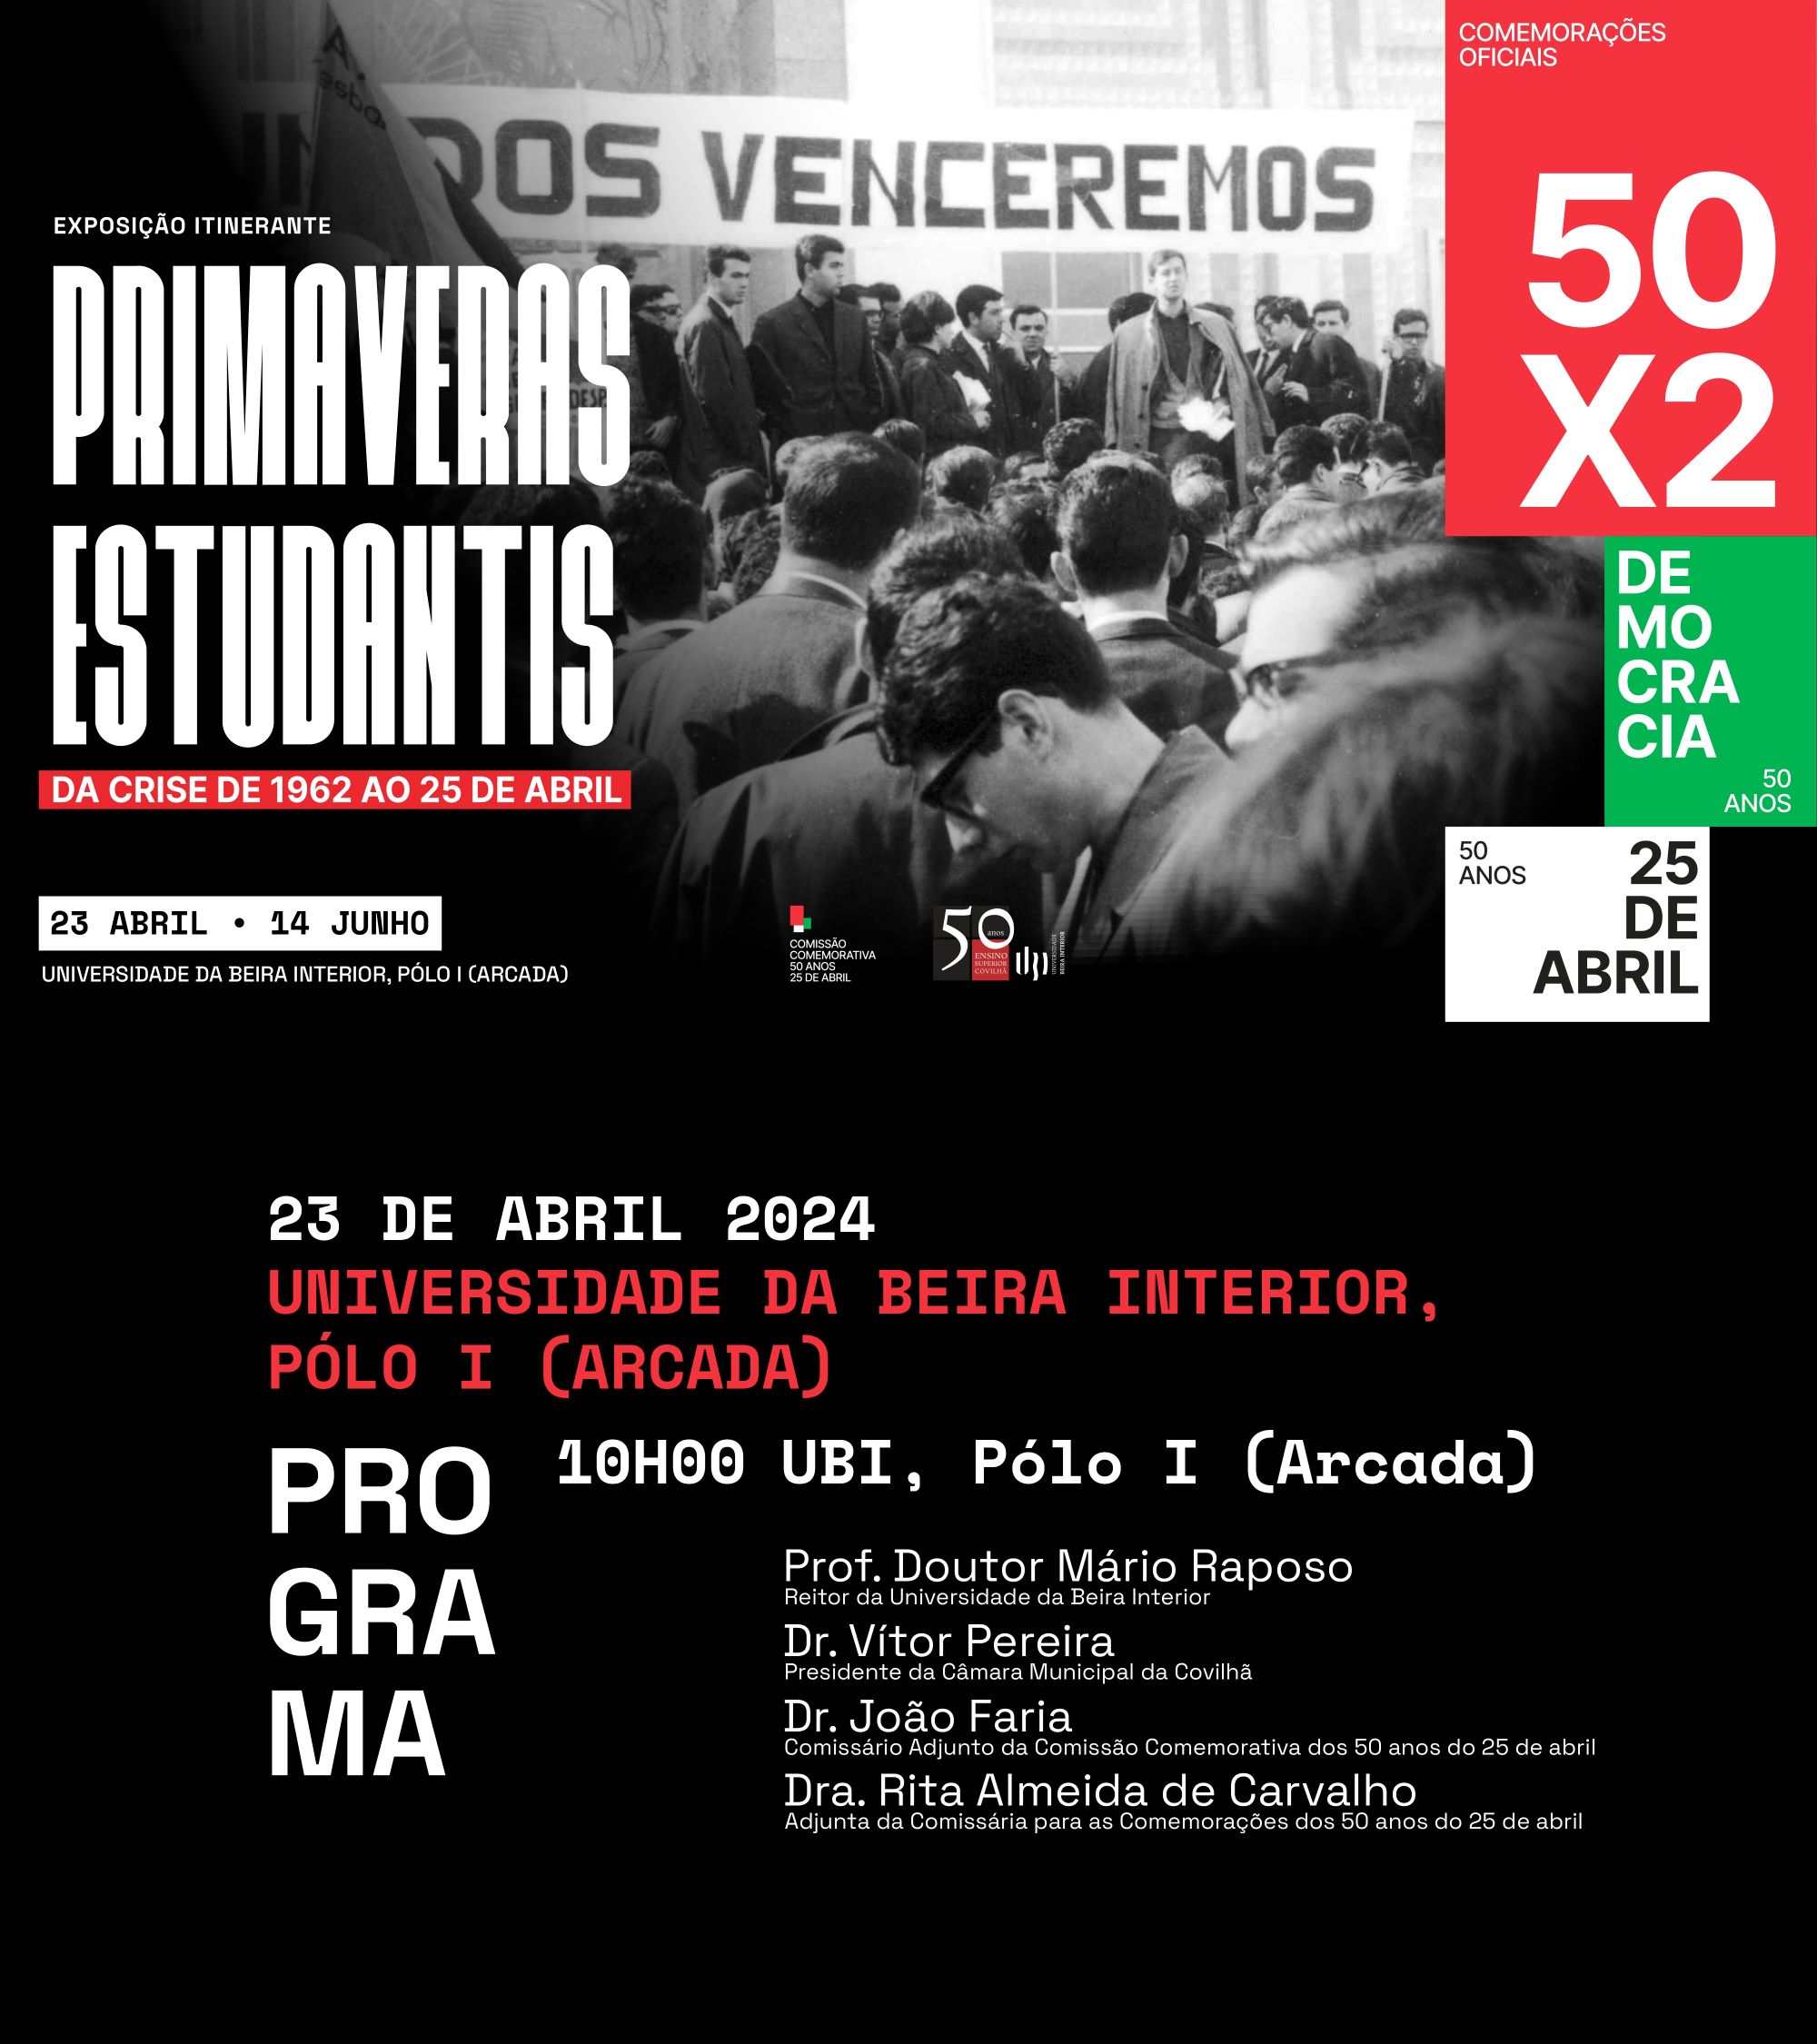 Capa Oficial do Evento Exposição itinerante “Primaveras Estudantis - Da crise de 1962 ao 25 de Abril"